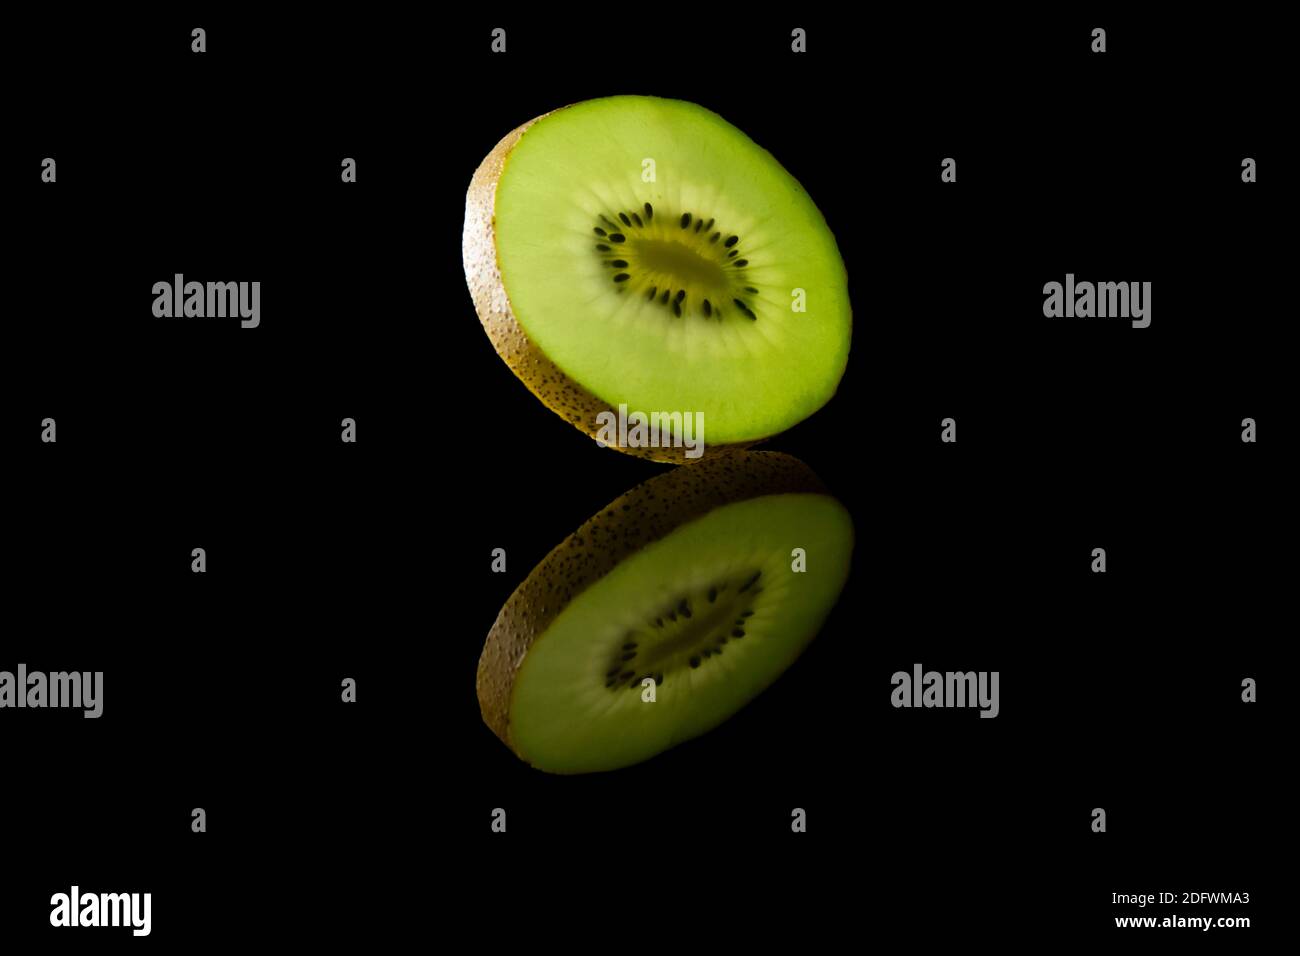 Slice of green Kiwi Fruit against black background Stock Photo